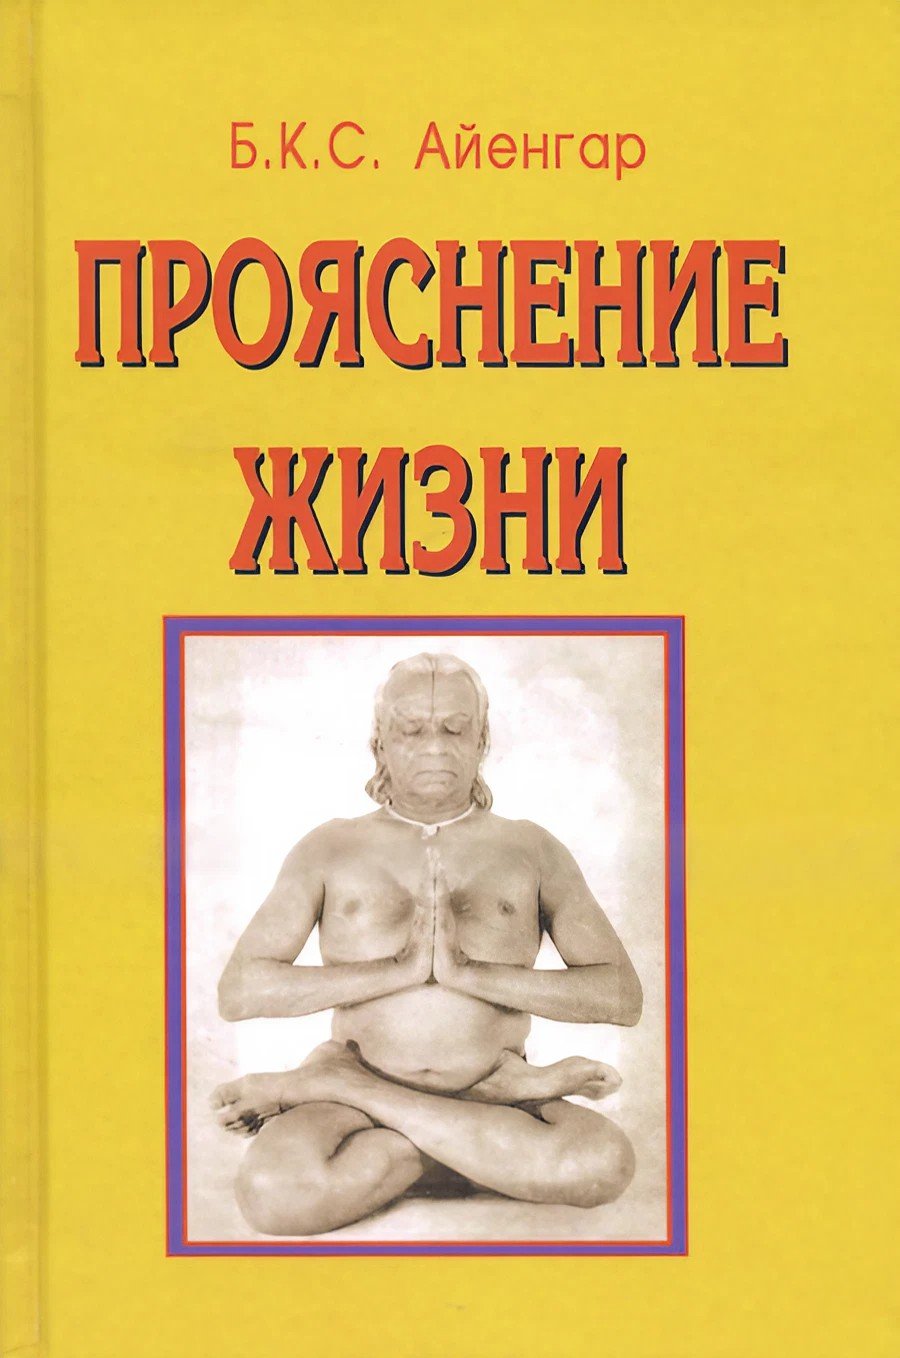 Купить книгу Прояснение жизни Айенгар Б. К. С. в интернет-магазине Ариаварта